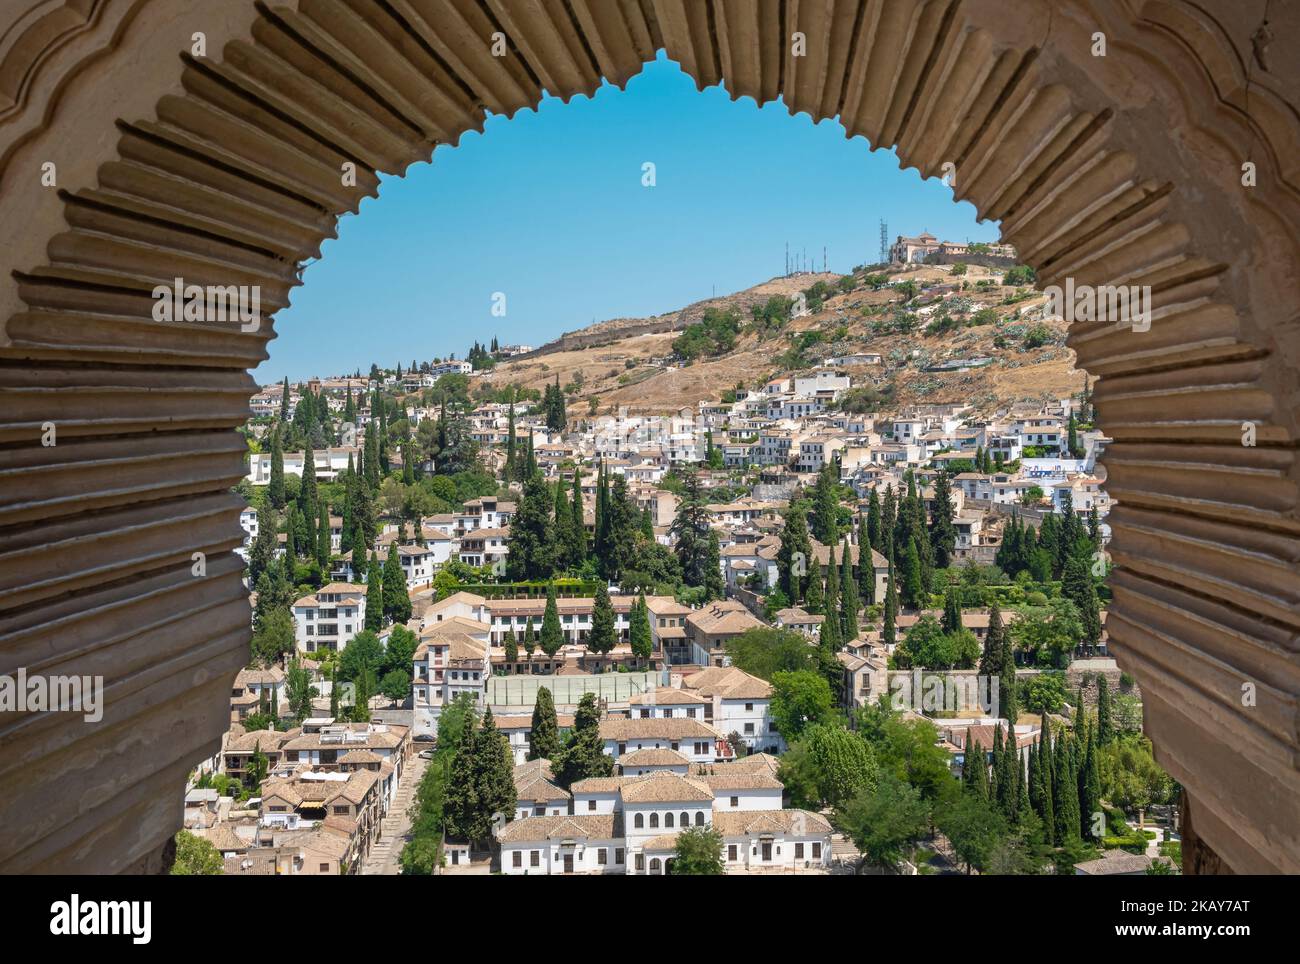 Vista de la ciudad de Granada atravÃ©s del arco de una ventana estilo Ã¡rabe en la torre de las damas de la Alhambra, EspaÃ±a Stock Photo